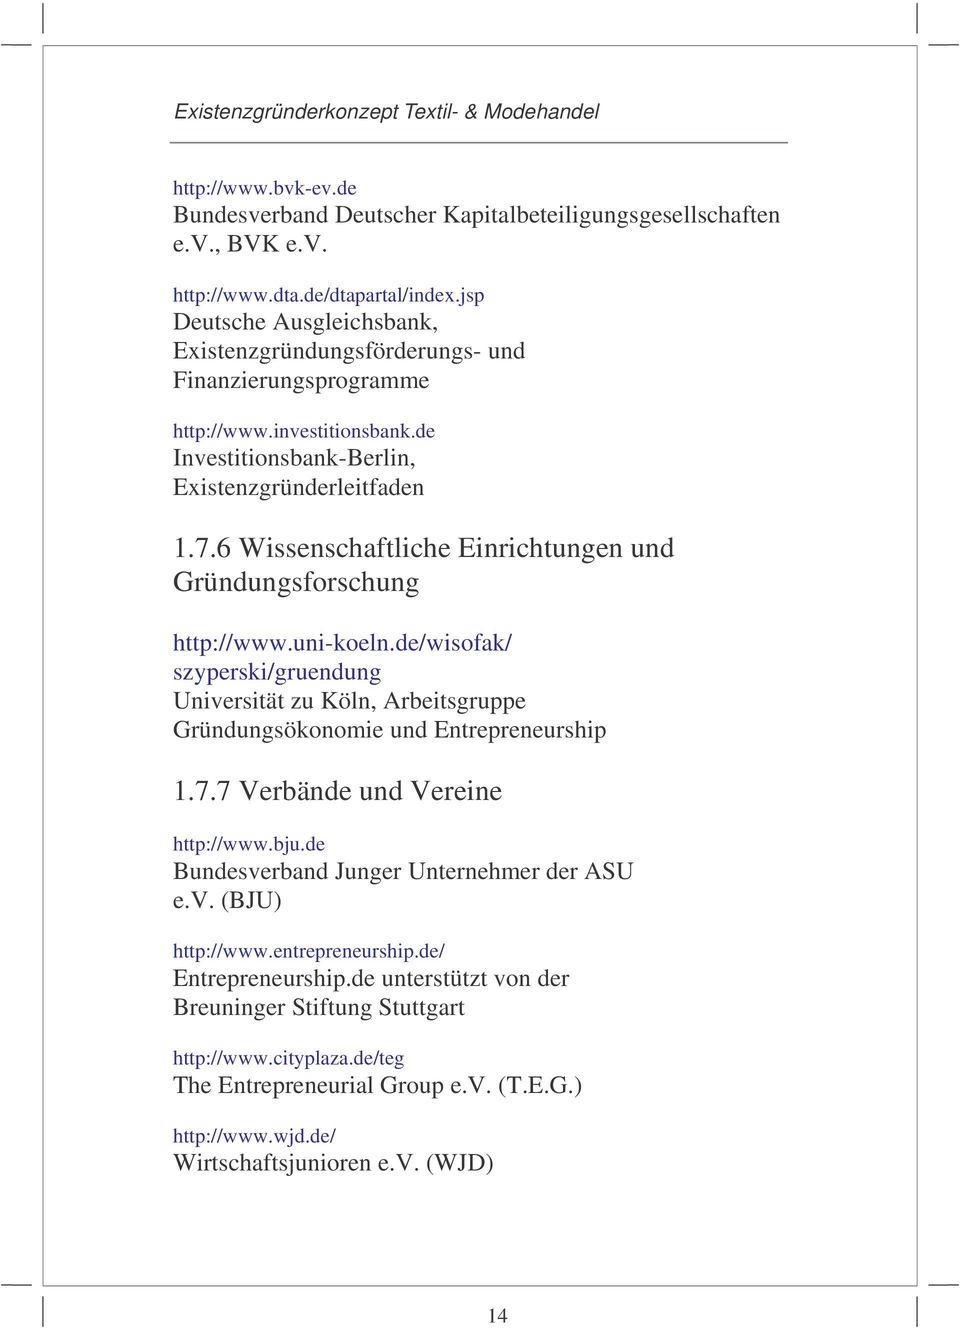 6 Wissenschaftliche Einrichtungen und Gründungsforschung http://www.uni-koeln.de/wisofak/ szyperski/gruendung Universität zu Köln, Arbeitsgruppe Gründungsökonomie und Entrepreneurship 1.7.